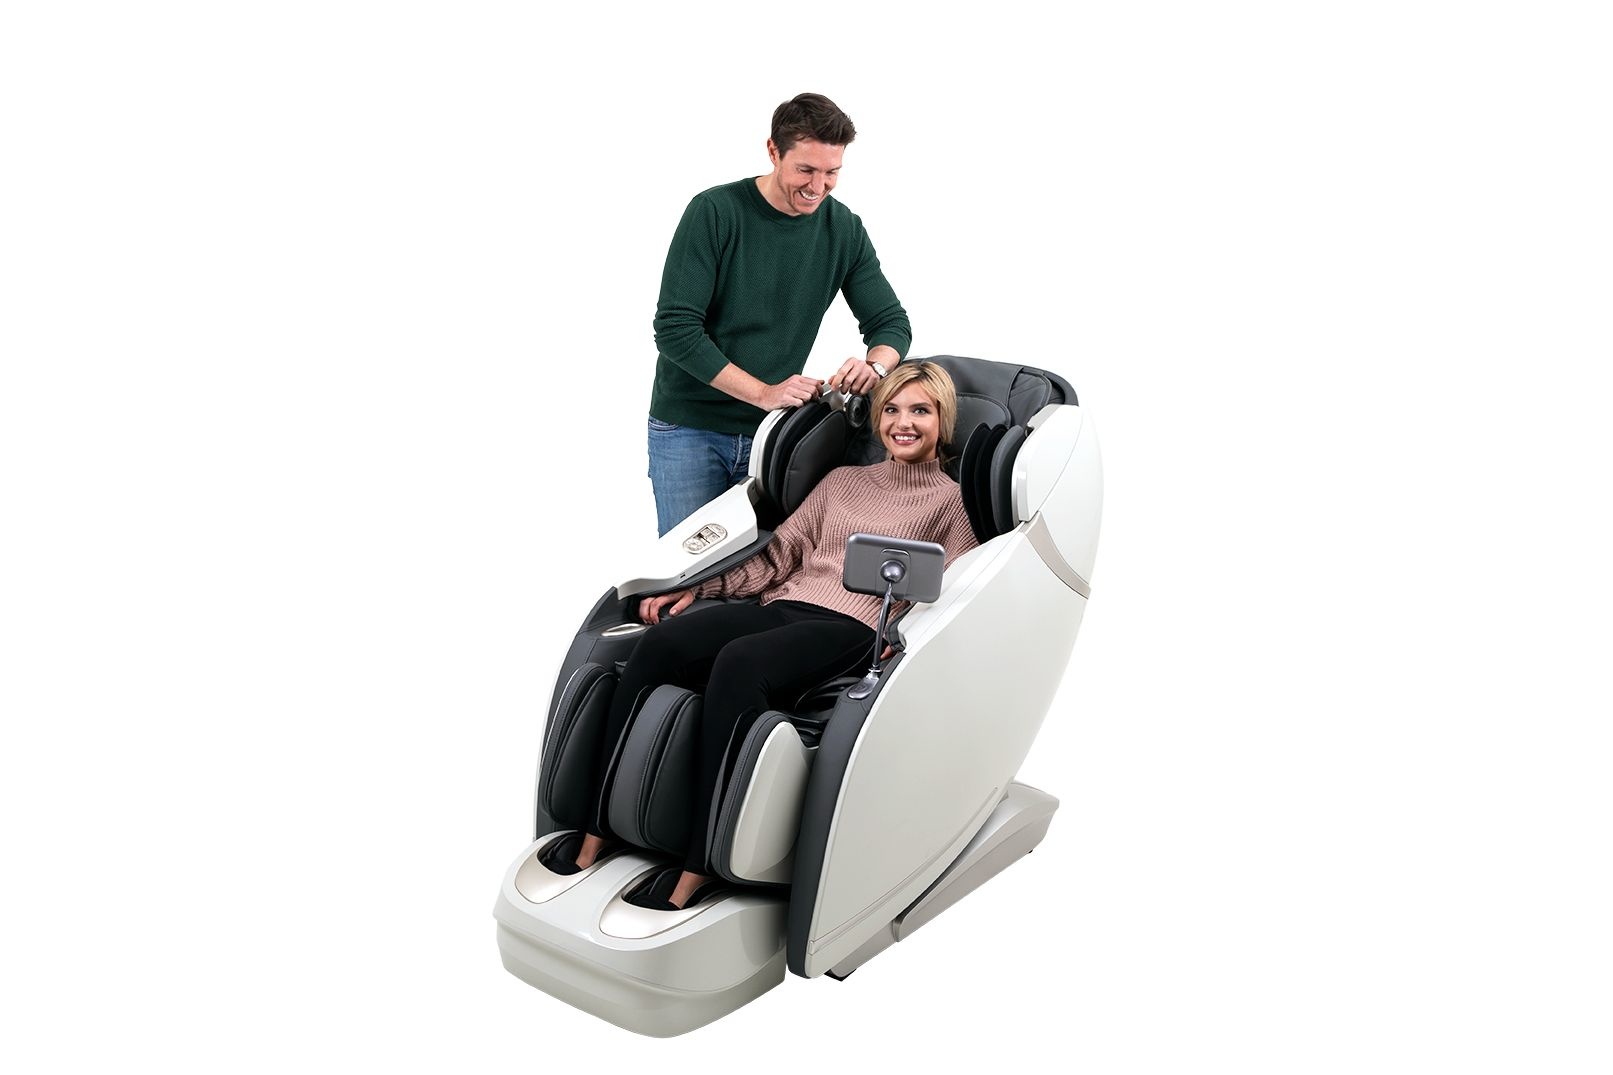 wassen Overtreden Doe mee Deluxe massage stoel - Skyliner II - ThuiszorgWebshop.be